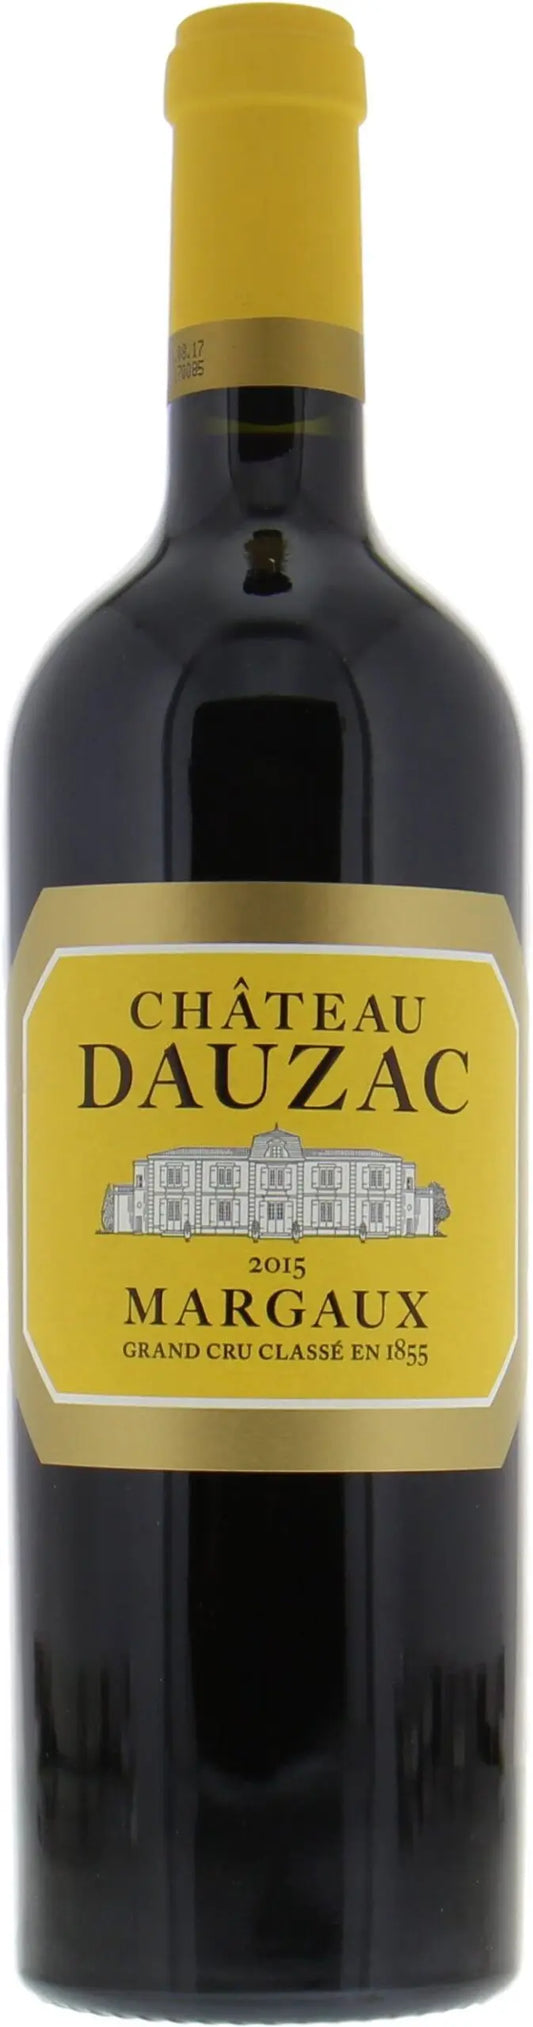 Chateau Dauzac 2015, Margaux (1x75cl) - TwoMoreGlasses.com